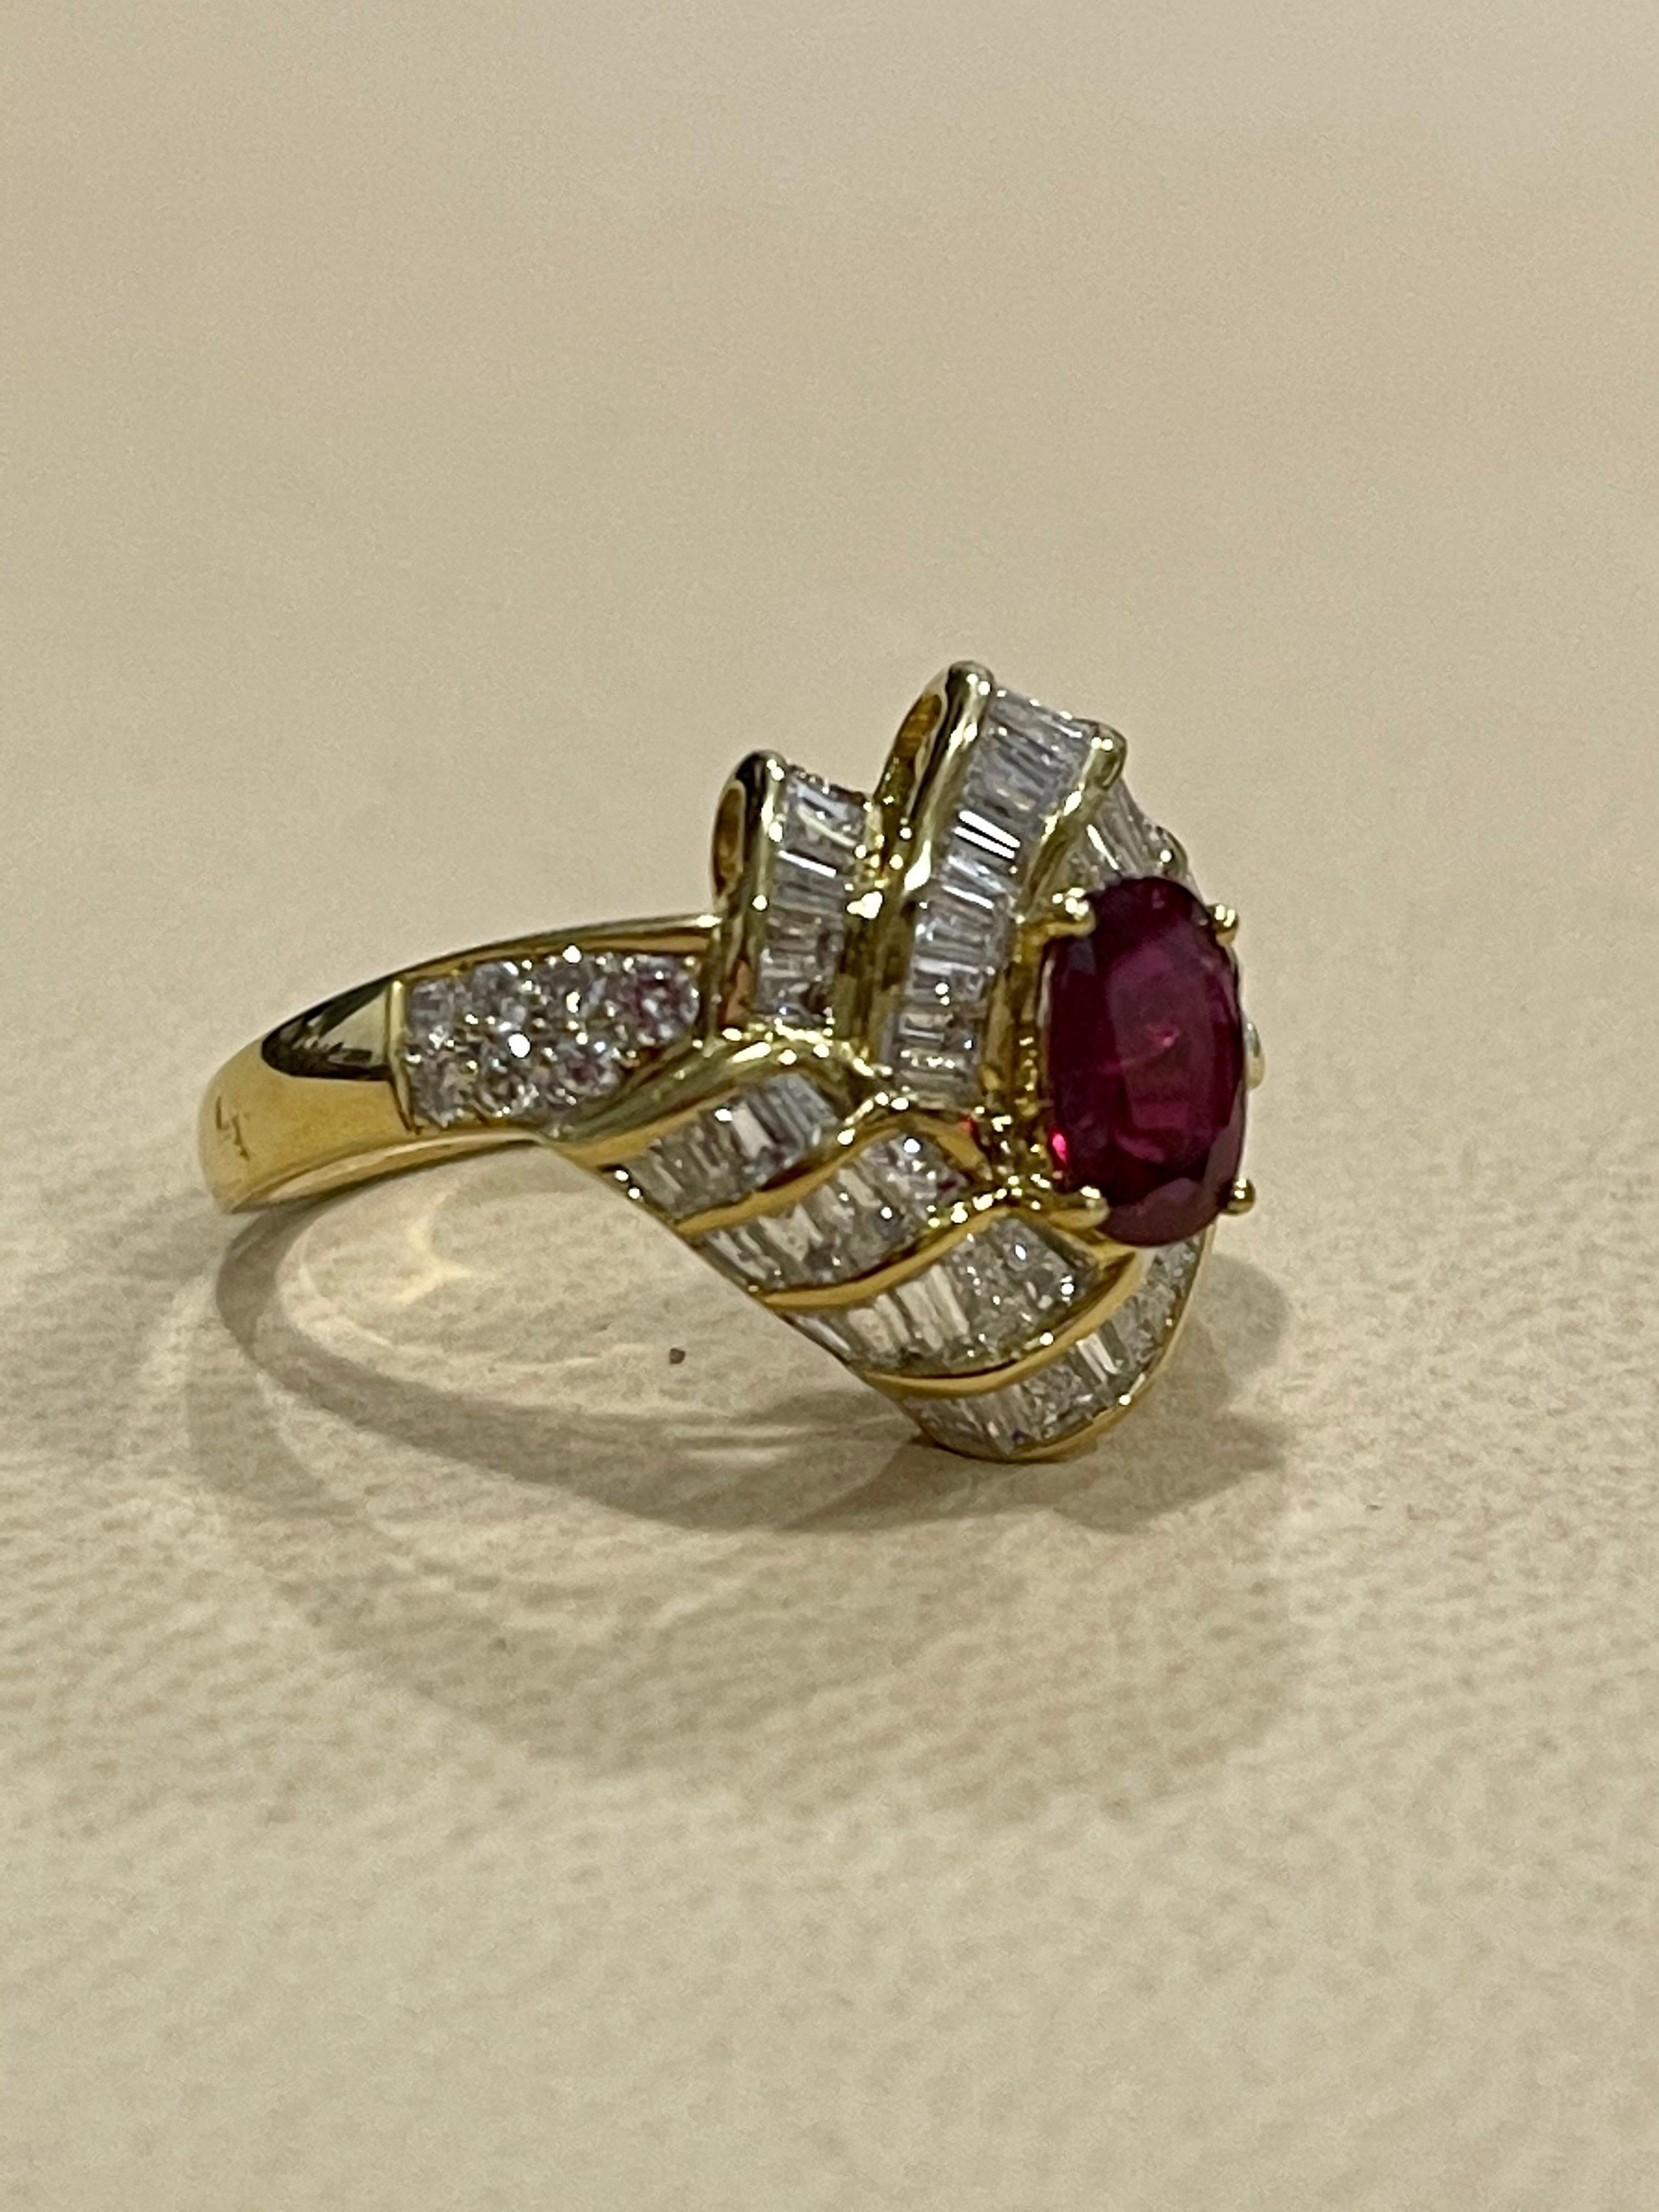 1.3 Carat Natural Oval Burma Ruby and 1.3 Carat Diamond 18 Karat Gold Ring 2